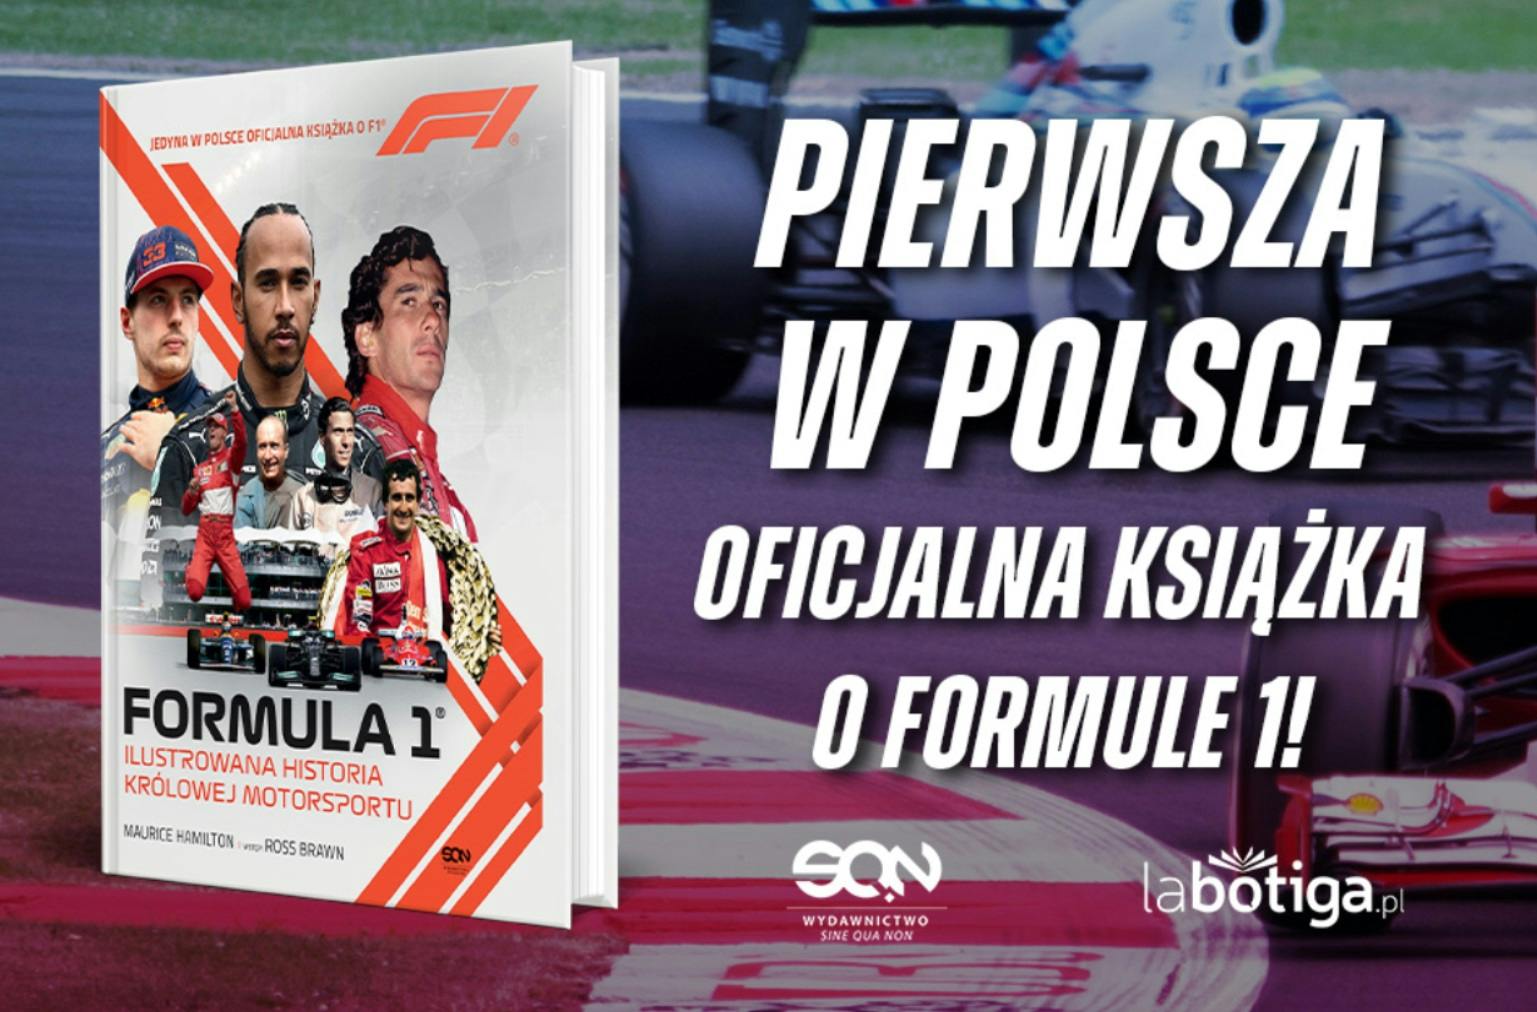 Pierwsza oficjalna książka F1 w Polsce. Ruszyła przedsprzedaż!